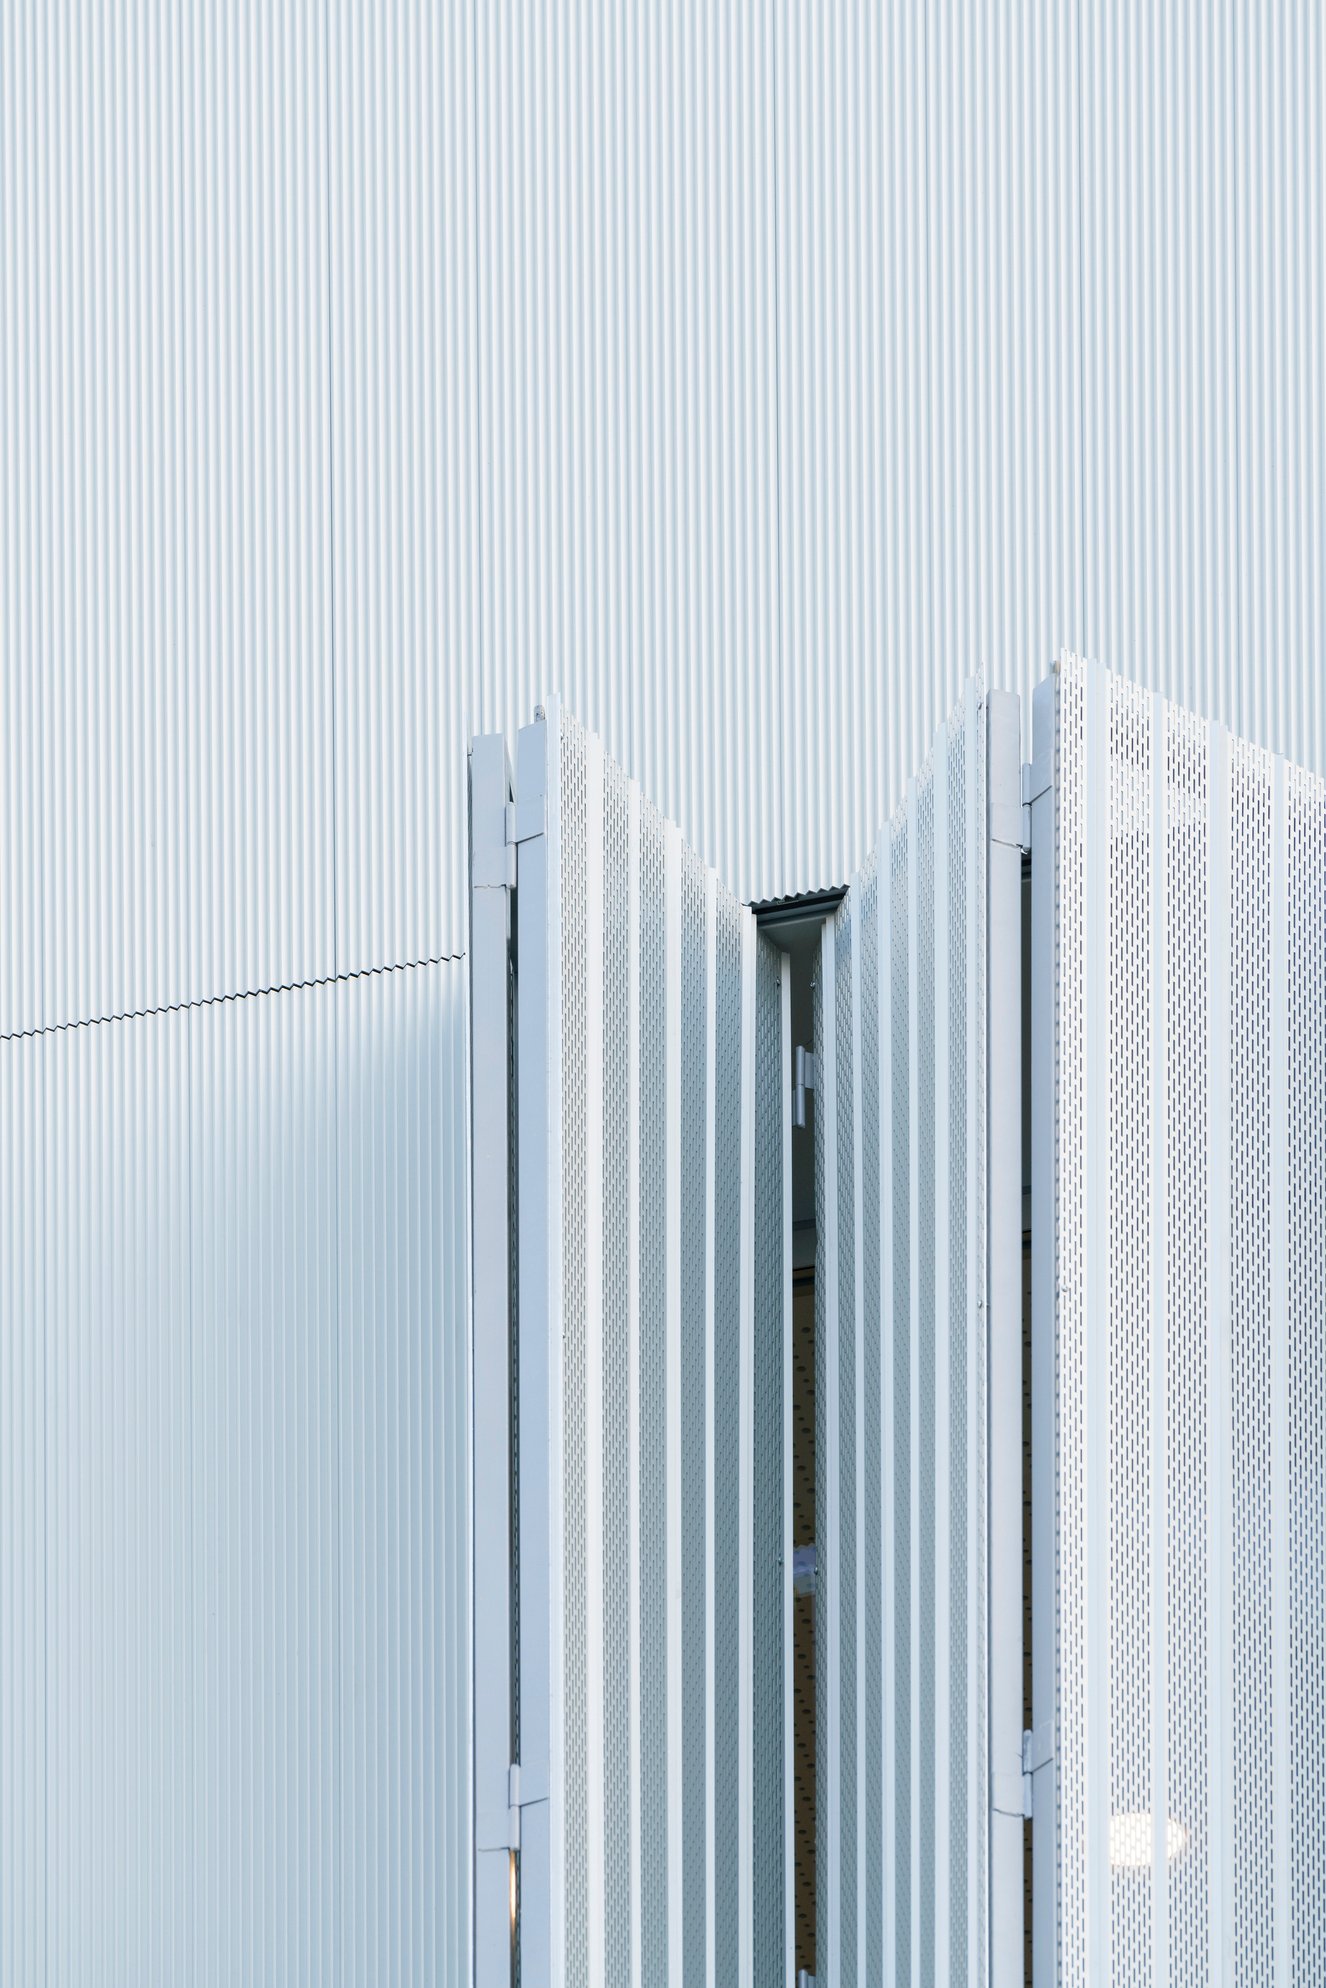 Mejora de la fachada ventilada con aluminio